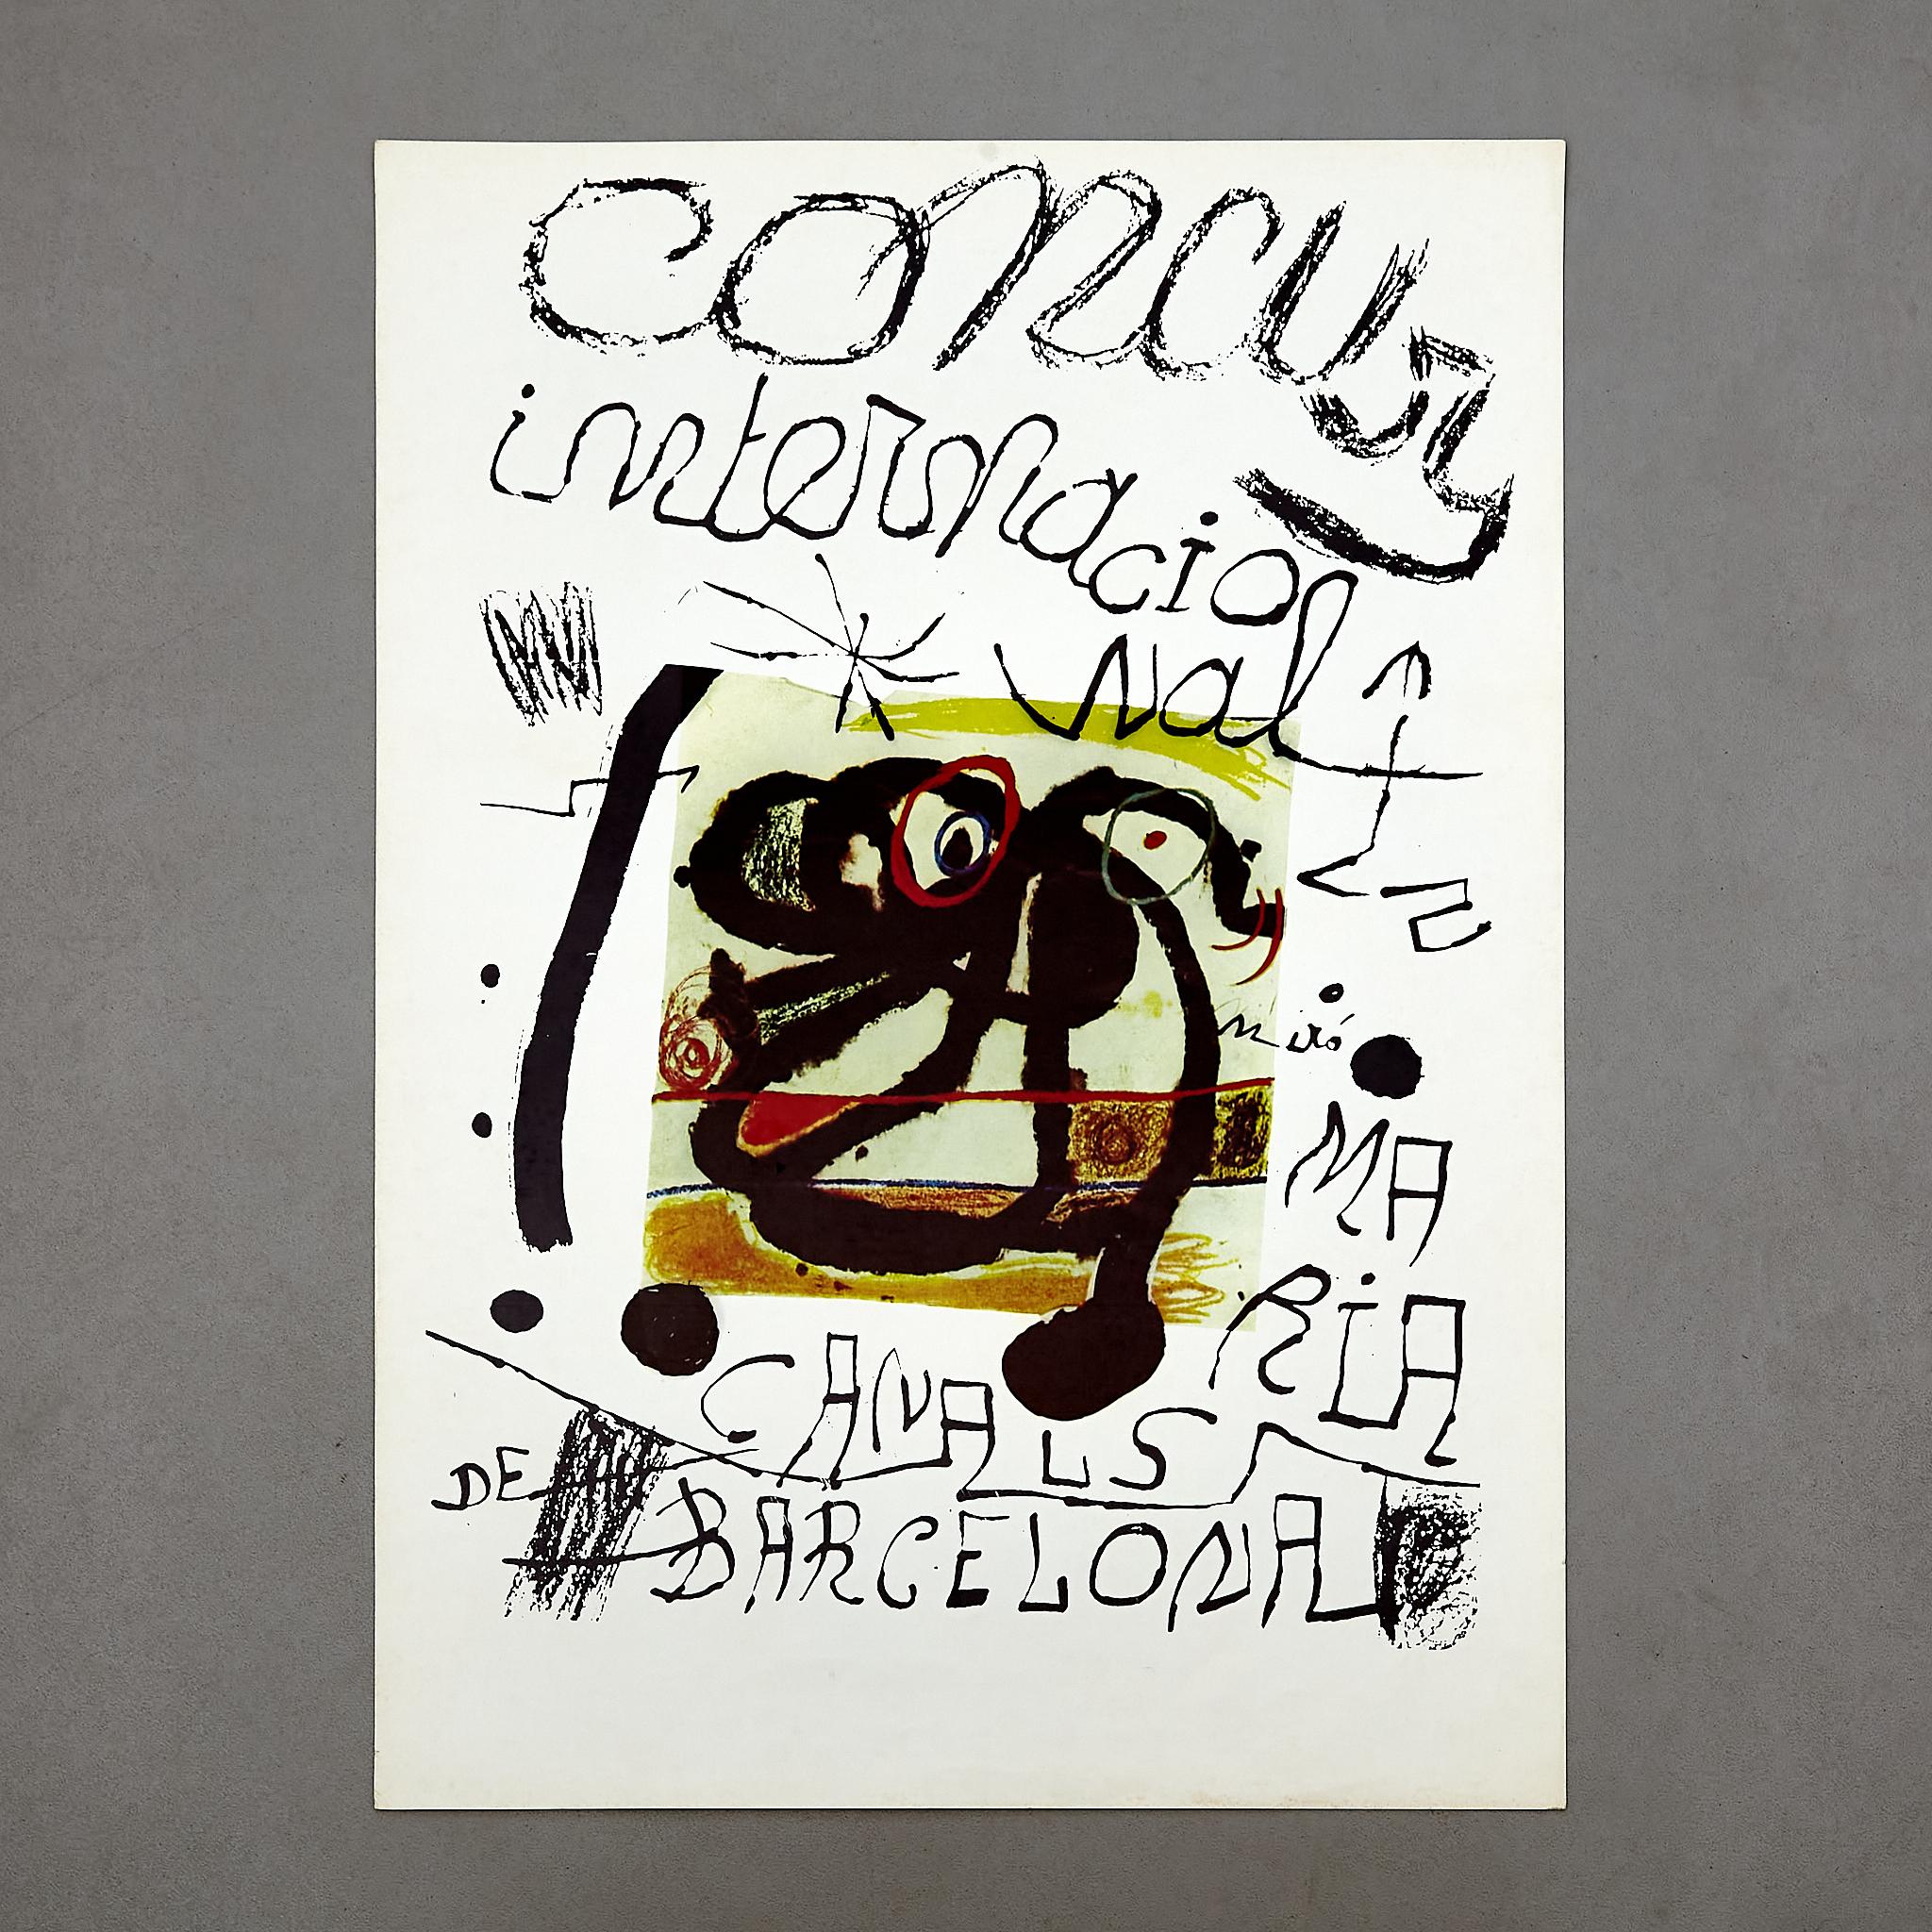 Affiche du concours international Maria Canals par Joan Miró.

Fabriqué en Espagne, vers 1979.

En état d'origine avec une usure mineure conforme à l'âge et à l'utilisation, préservant une belle patine.

Matériaux : 
Papier 

Dimensions : 
D 0,1 cm